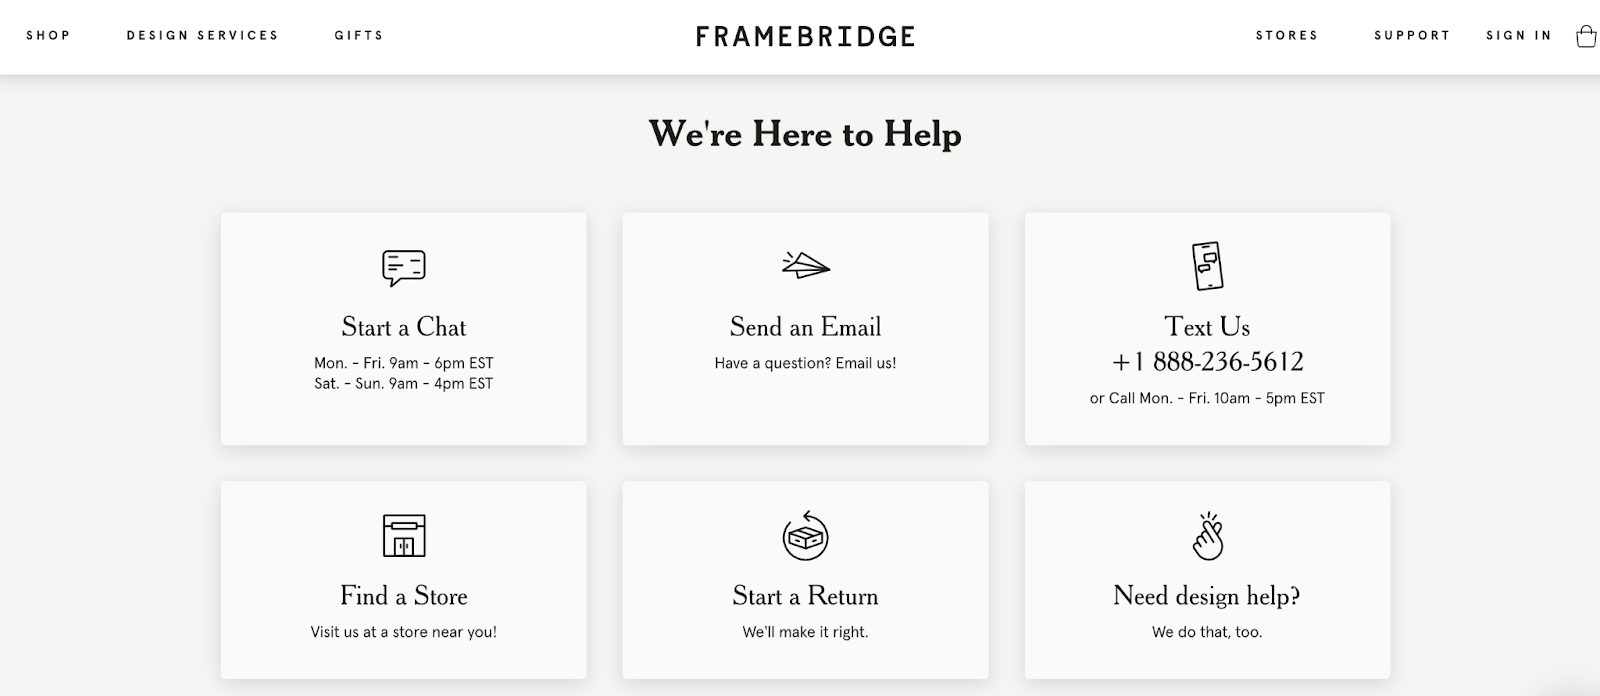 Framebridge support page